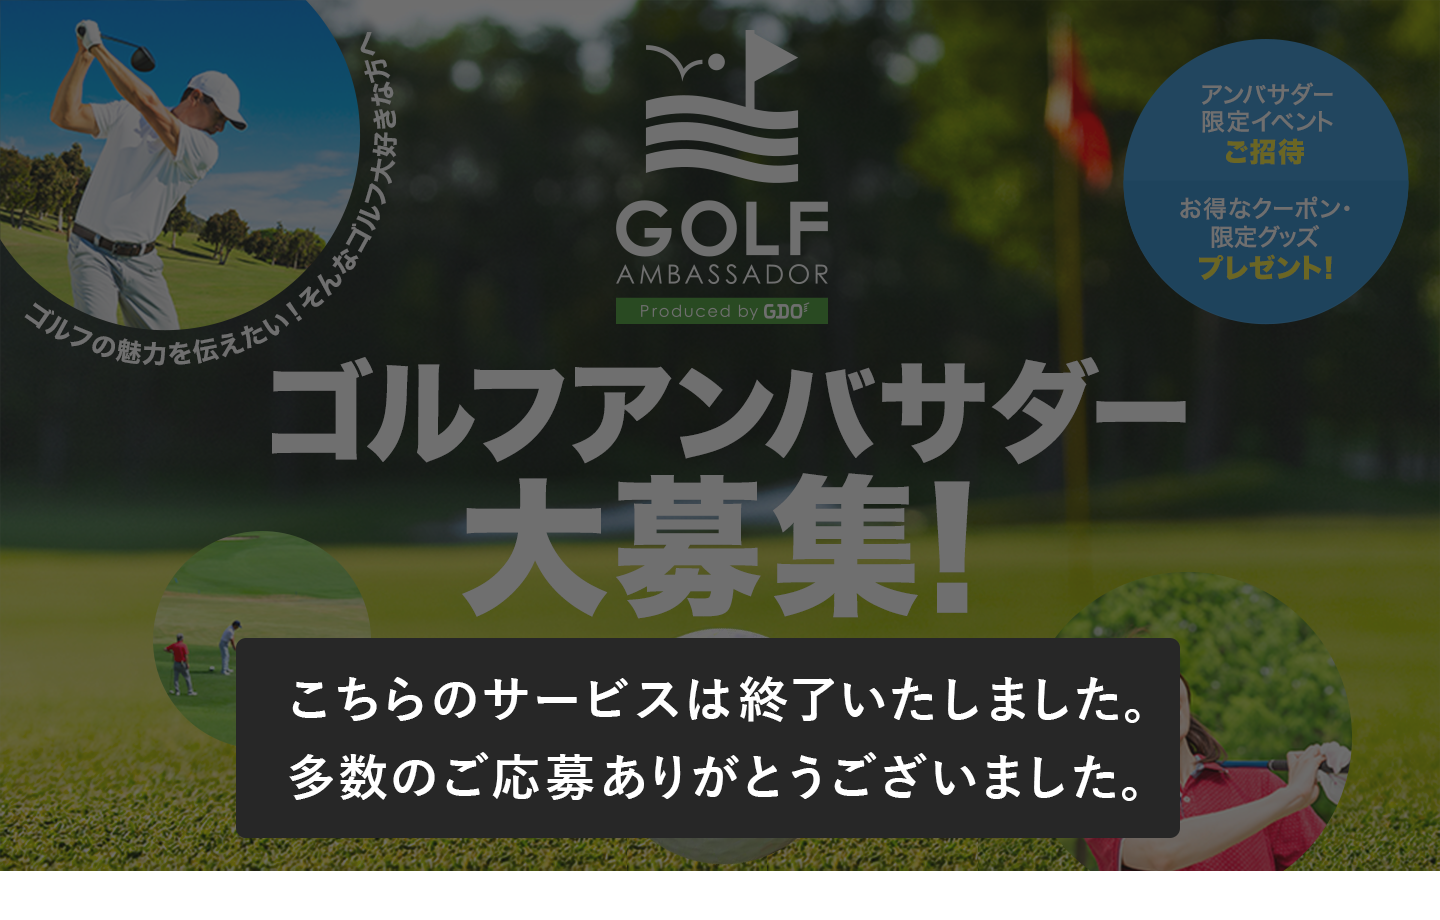 Gdo ゴルフの魅力を伝えたい そんなゴルフ大好きな方へ Presented By Gdo ゴルフアンバサダー 大募集